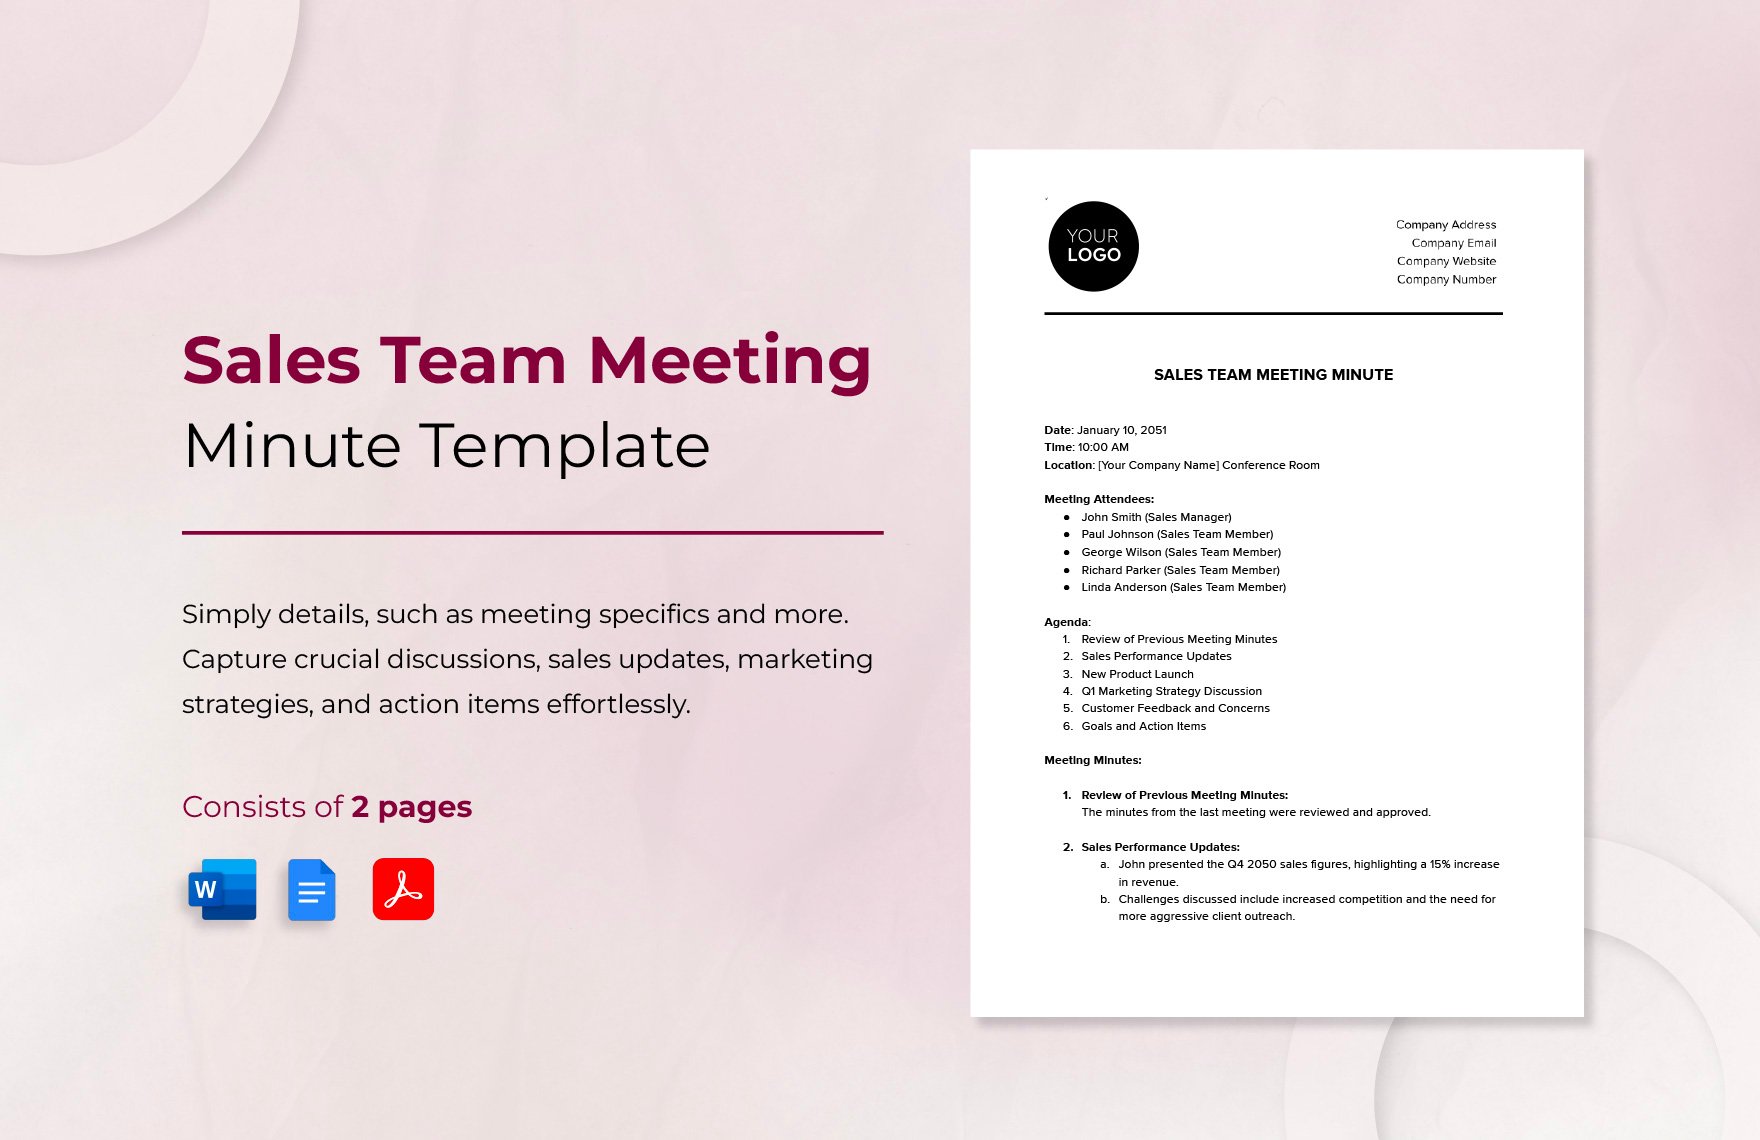 Sales Team Meeting Minute Template